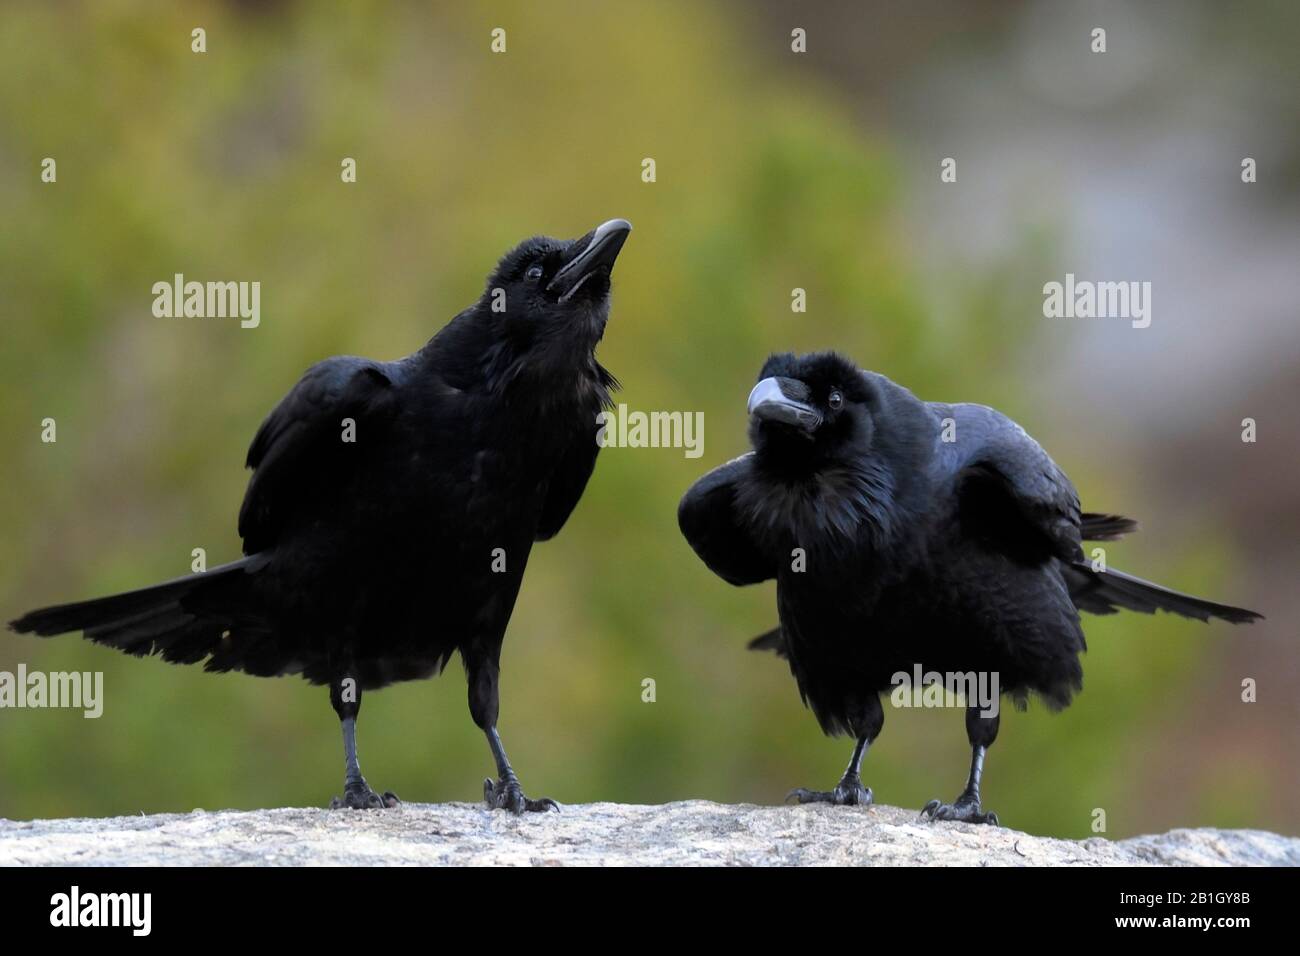 common raven (Corvus corax), two common ravens, Norway Stock Photo